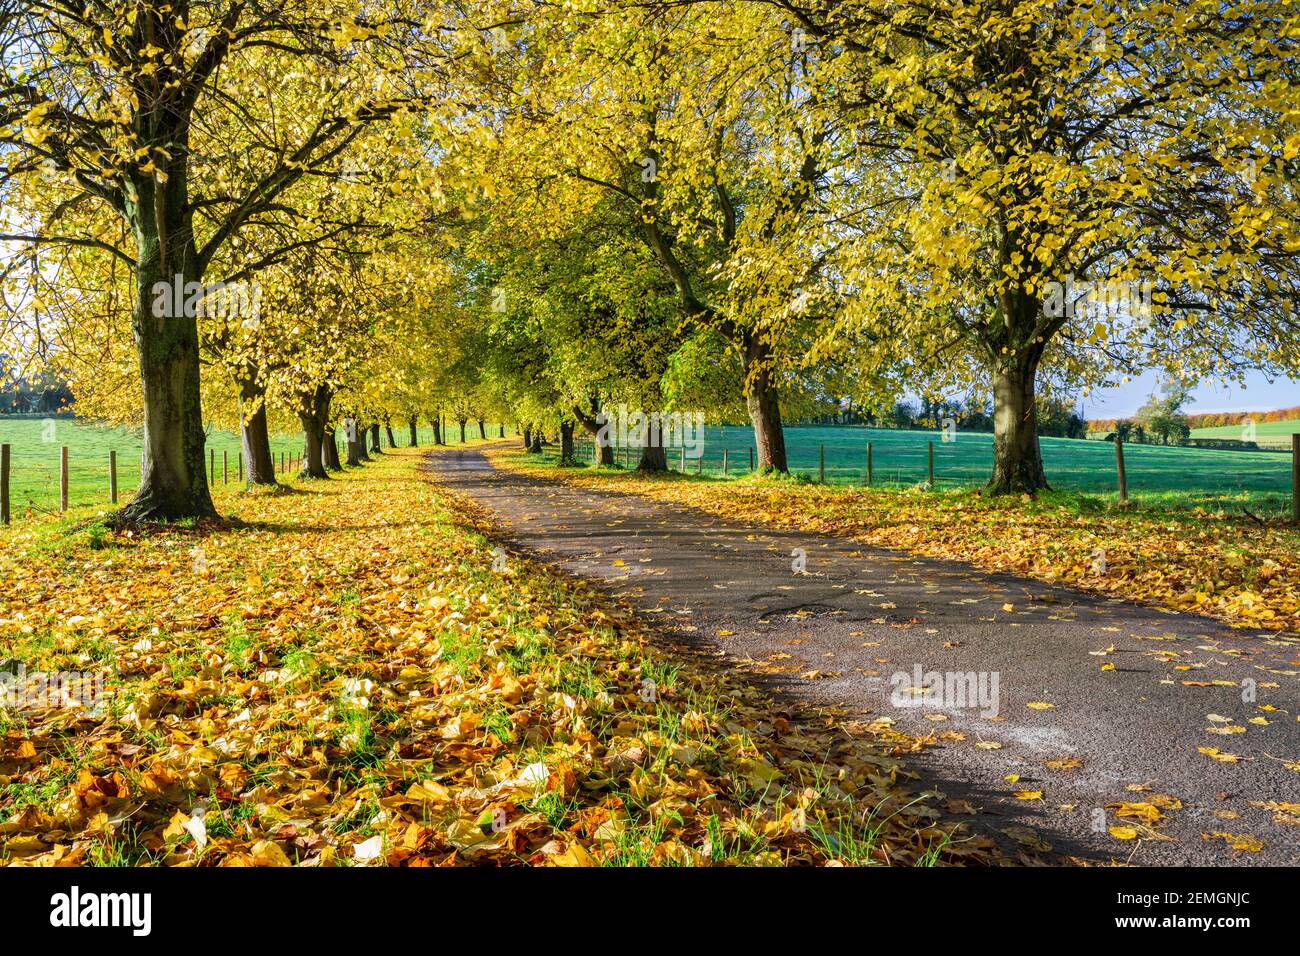 Avenue von Herbstbäumen mit bunten gelben Blättern, Newbury, Bekshire, England, Vereinigtes Königreich, Europa Stockfoto